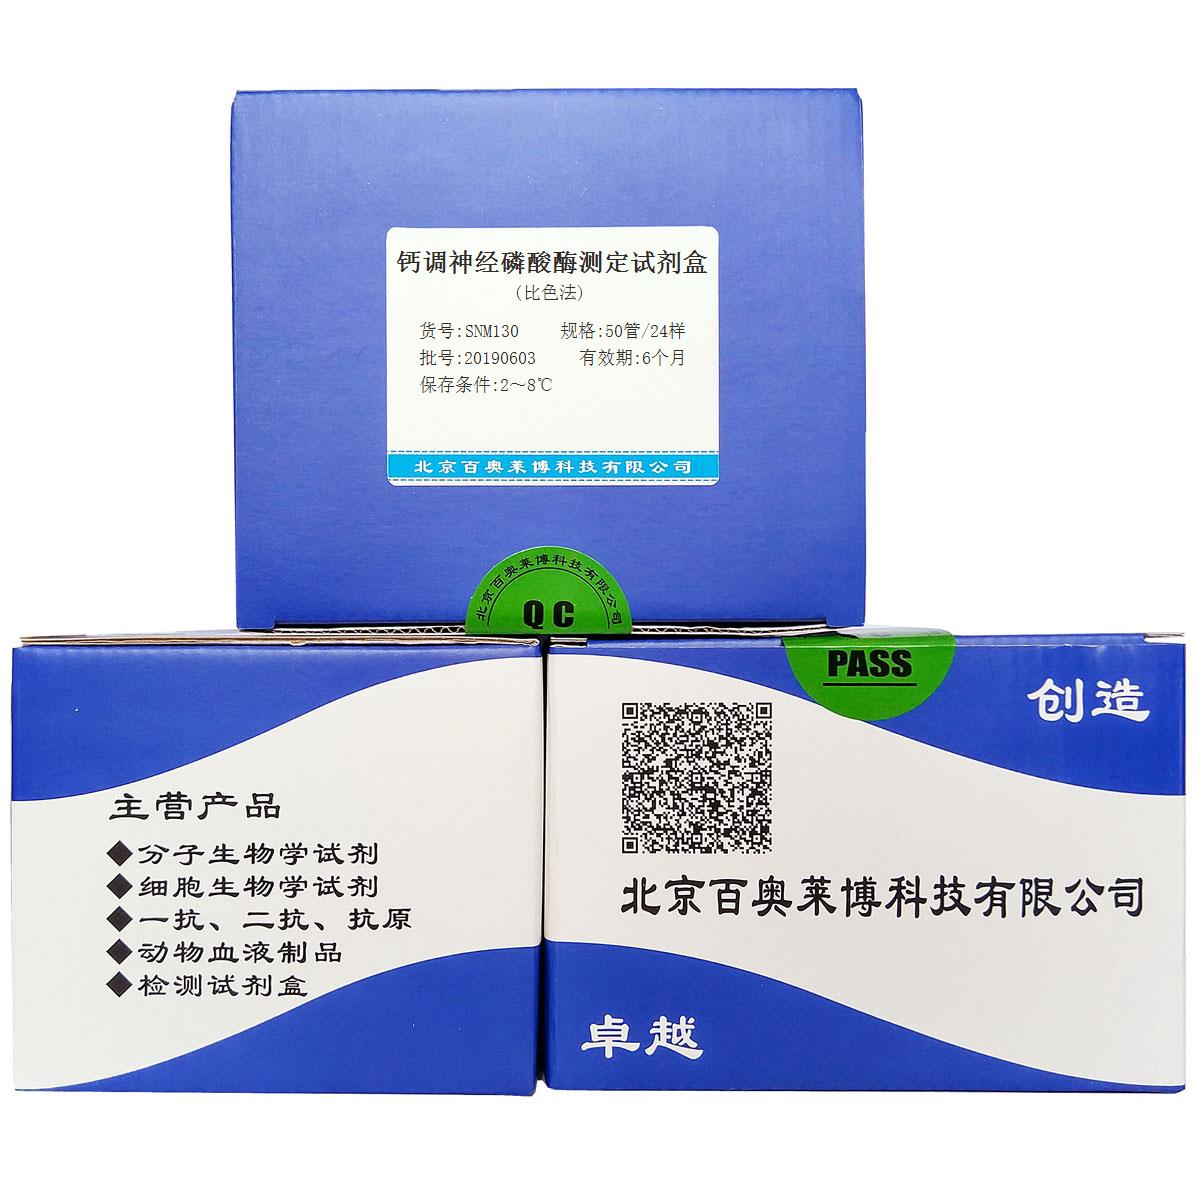 钙调神经磷酸酶测定试剂盒(比色法)北京厂家